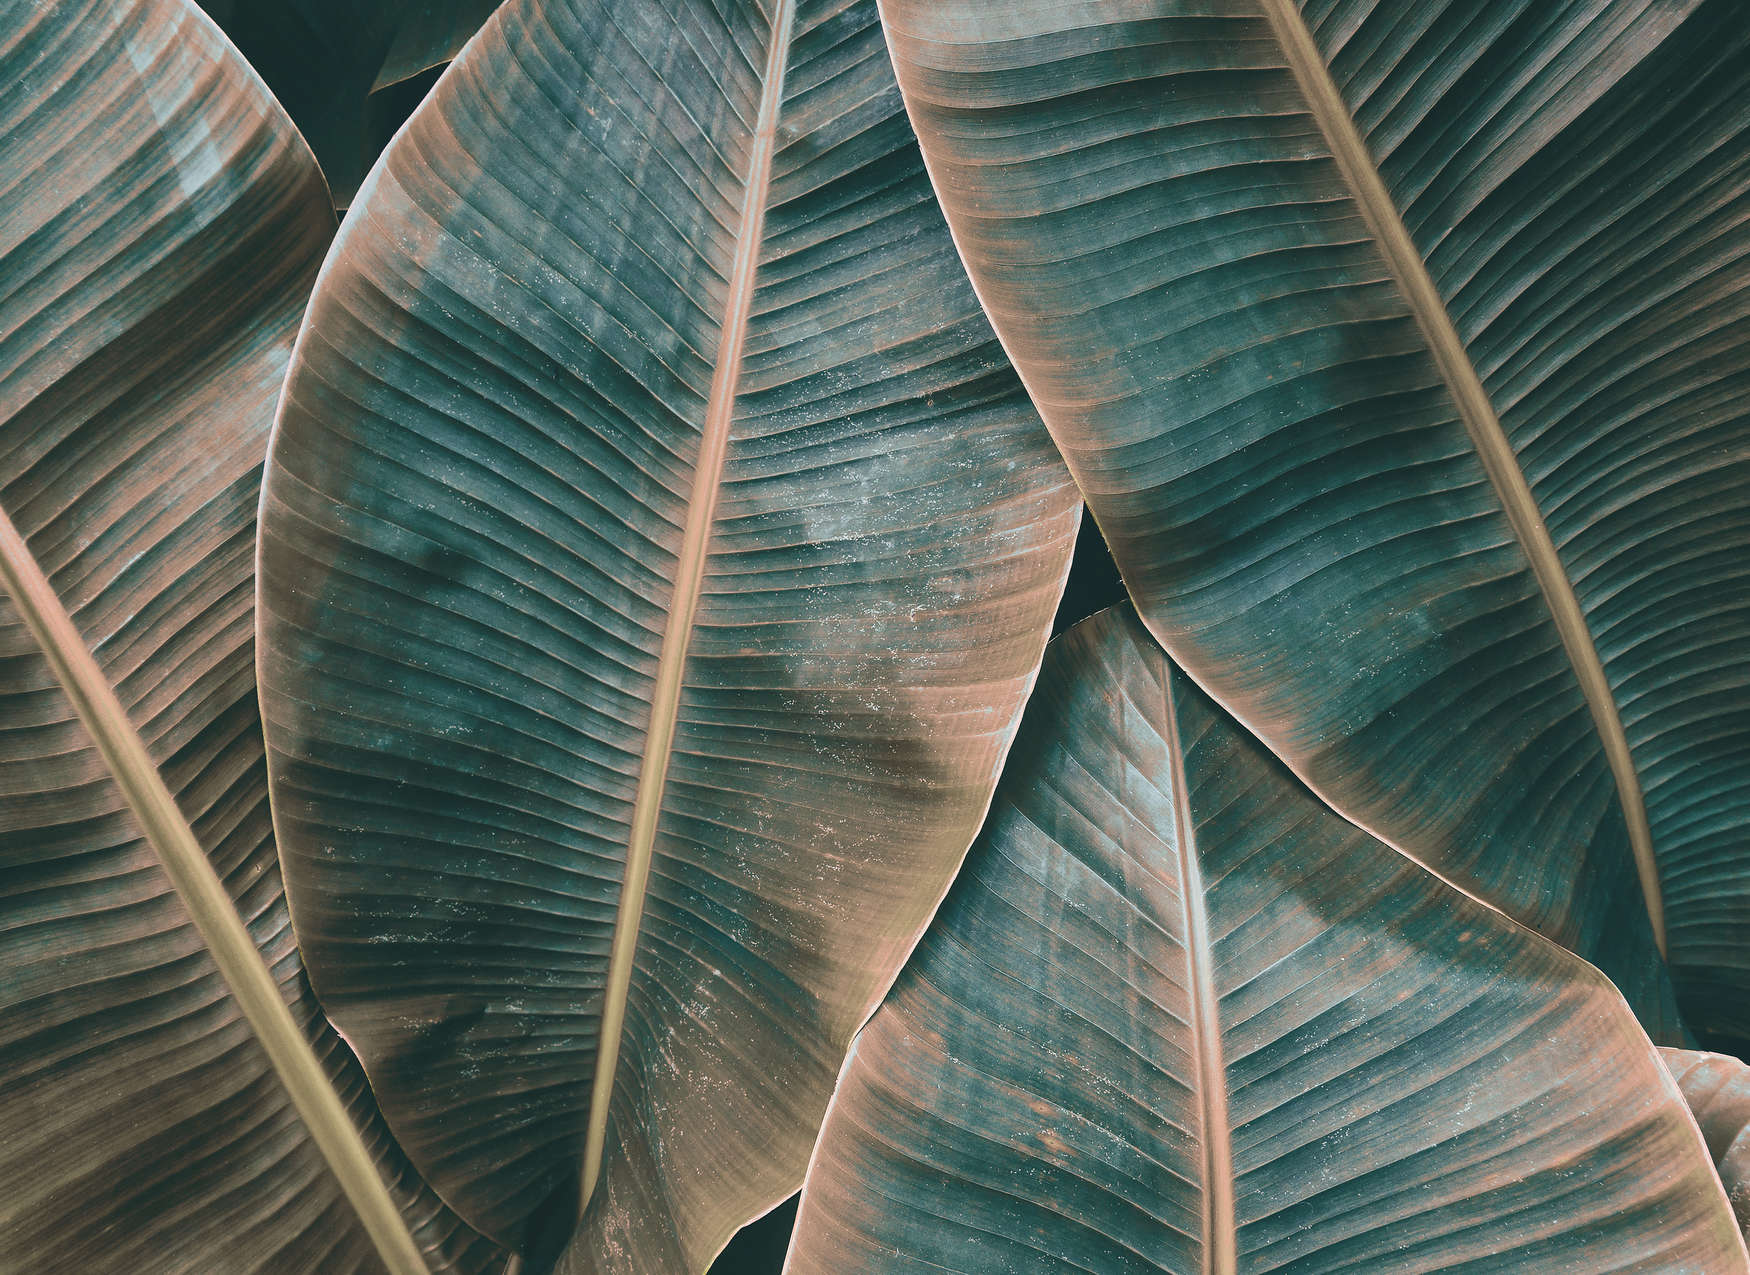             Dschungel Fototapete mit Bananenblättern – Grün, Braun
        